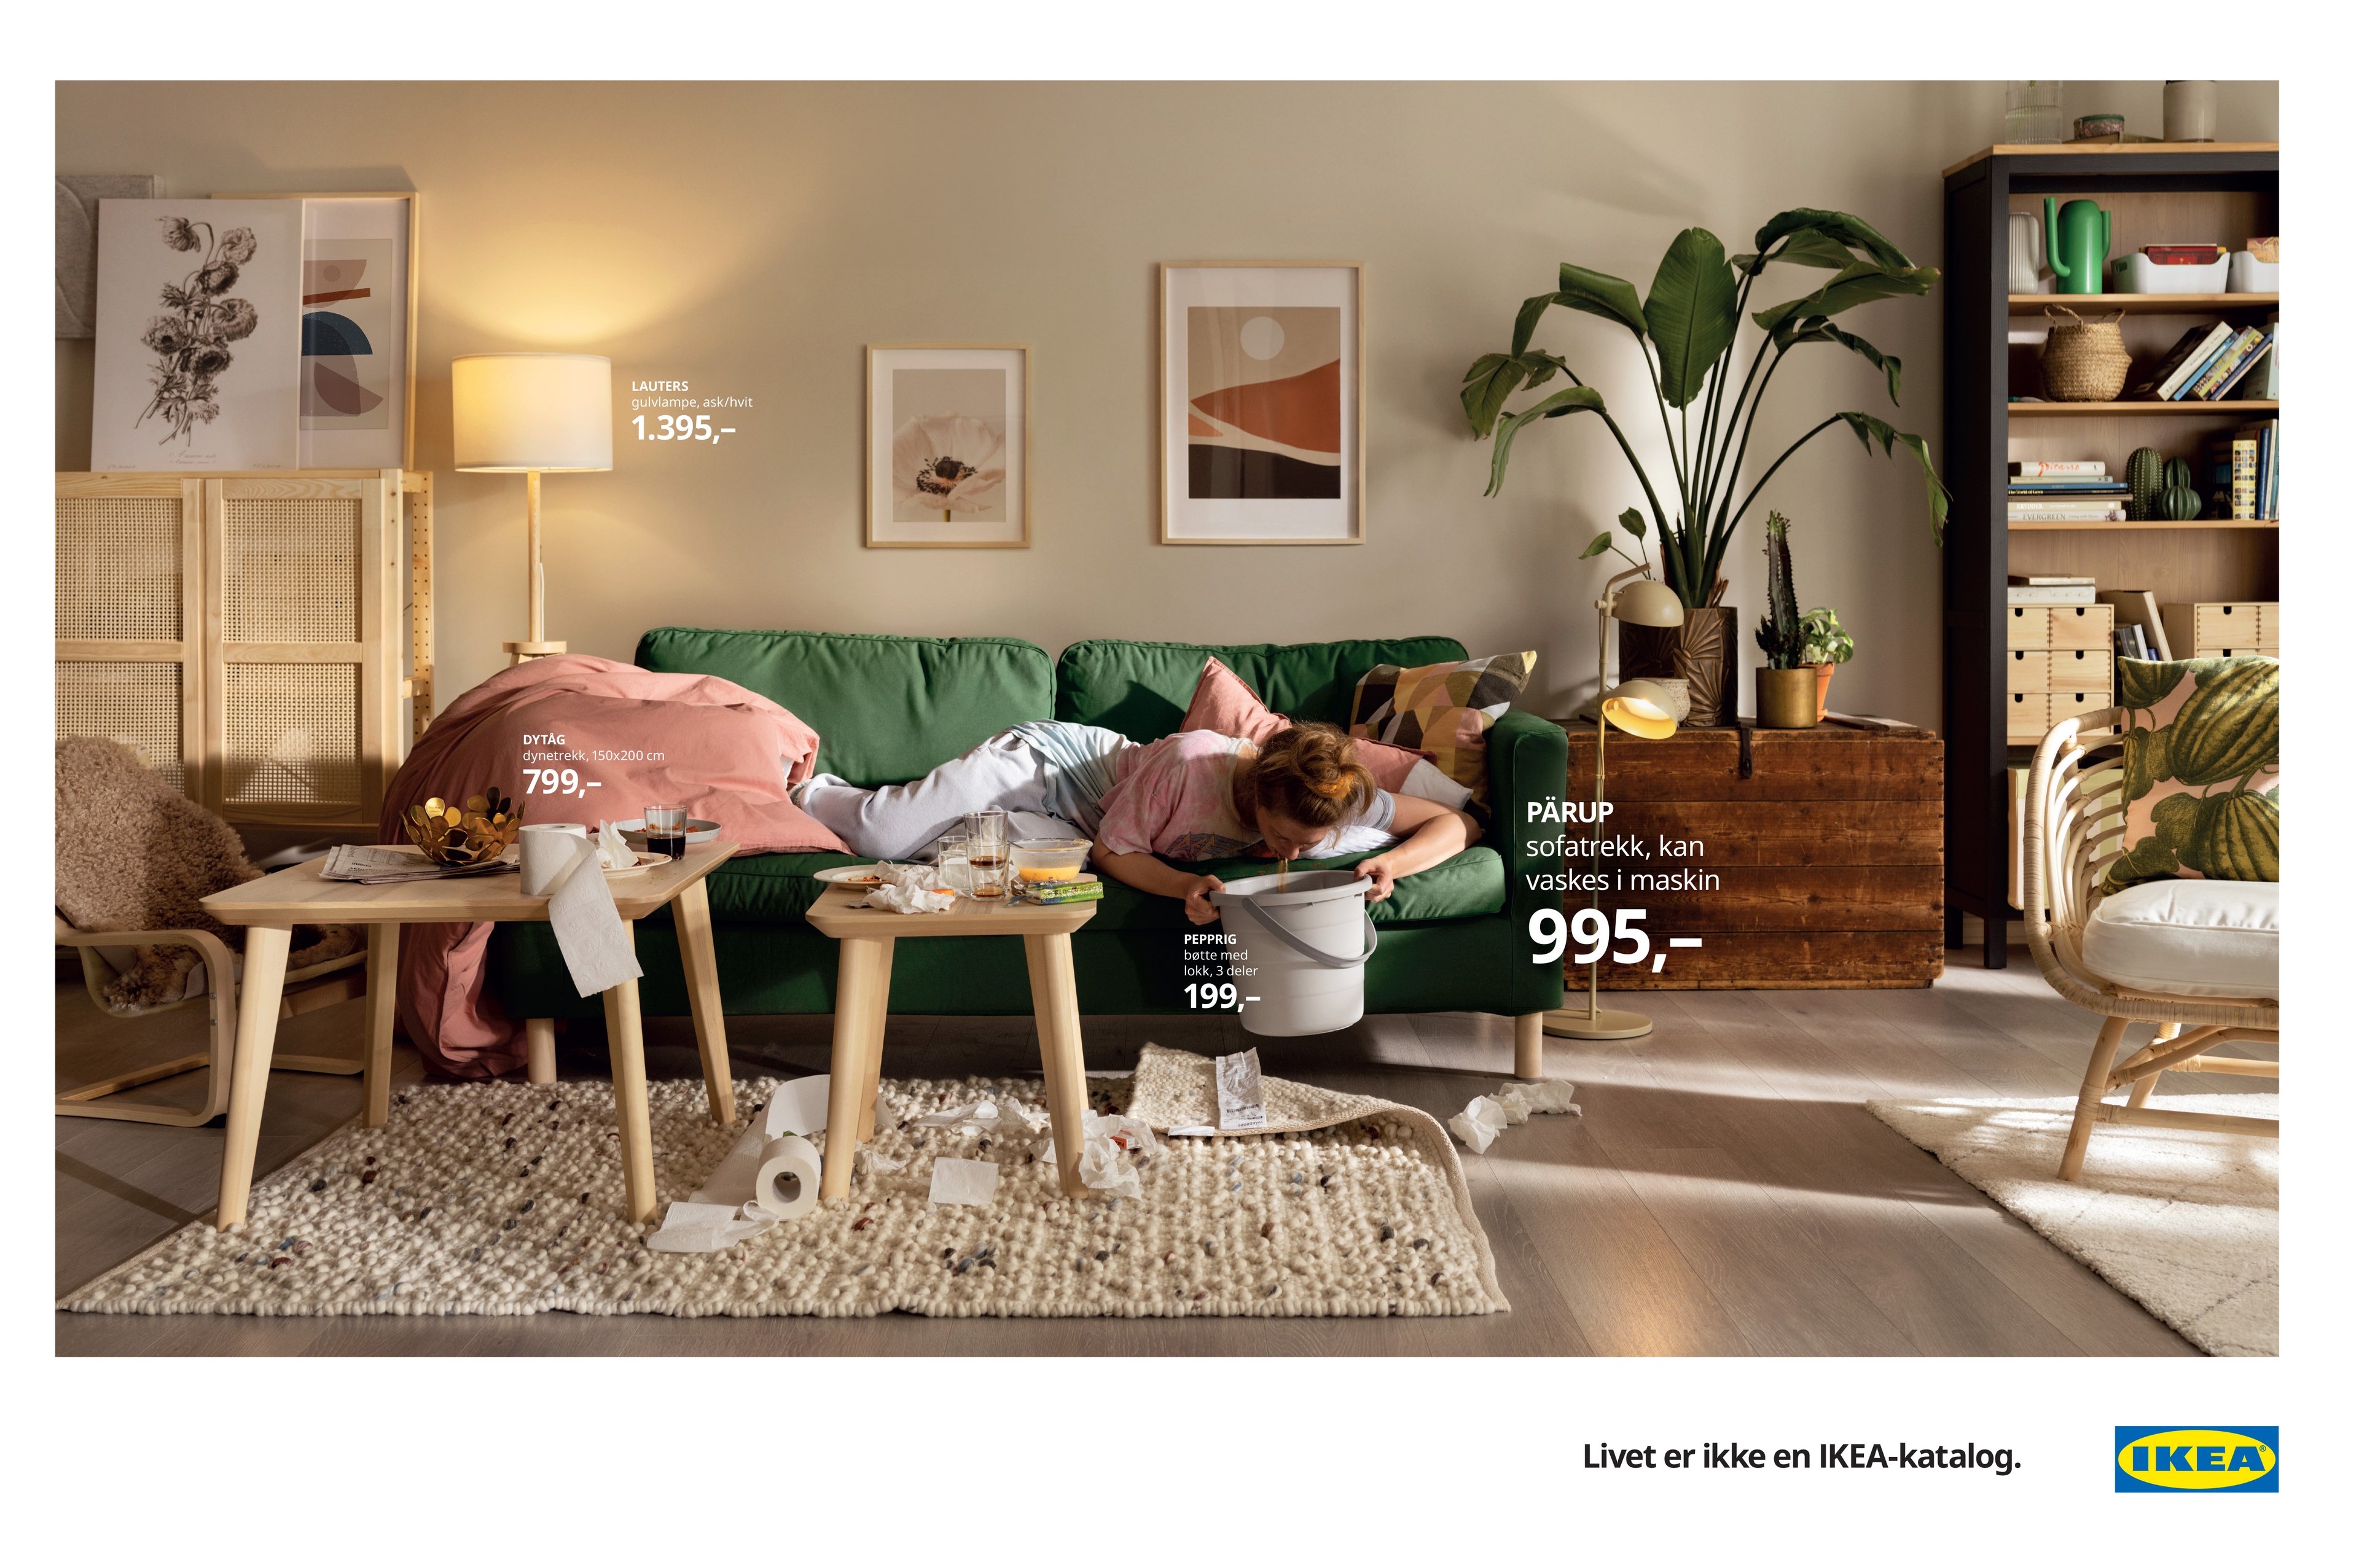 IKEA / Livet er ikke en IKEA-katalog